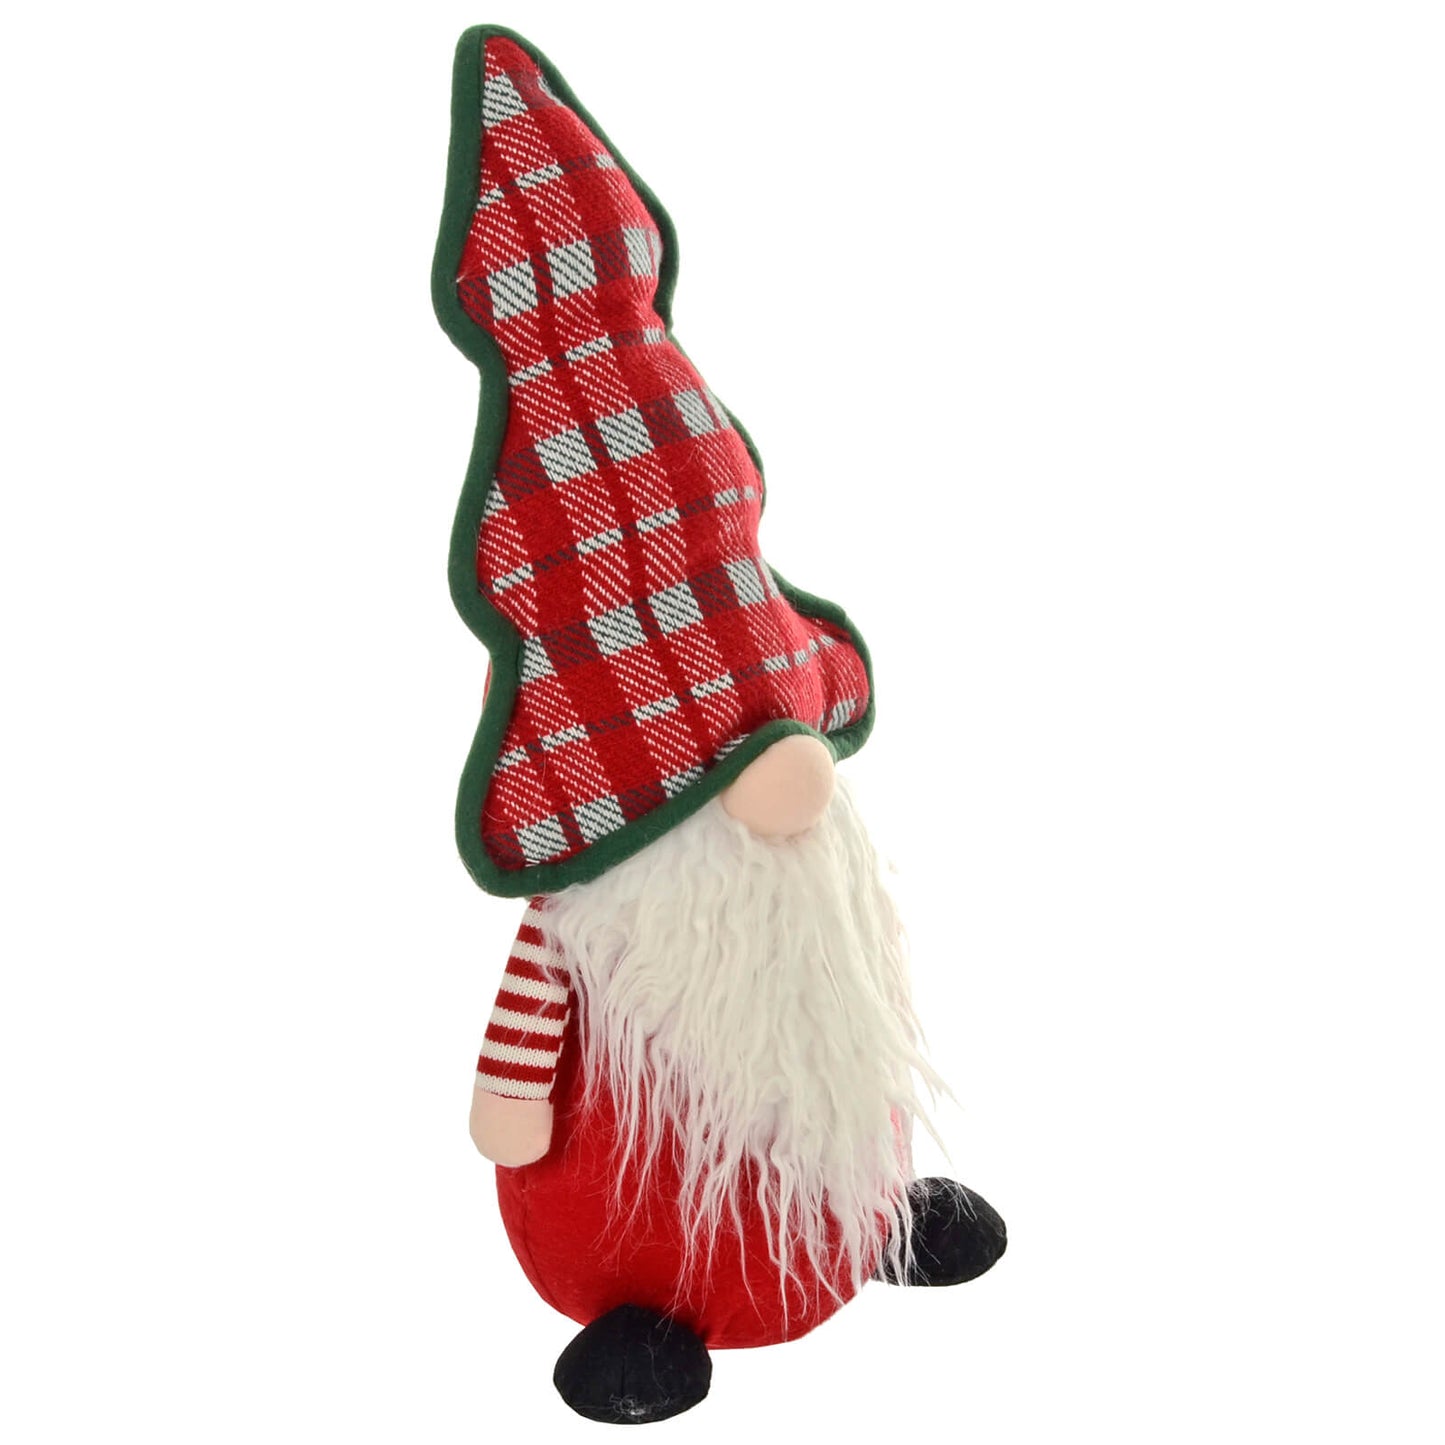 Mr Crimbo Gonk With Christmas Tree Shape Hat Decoration 53cm